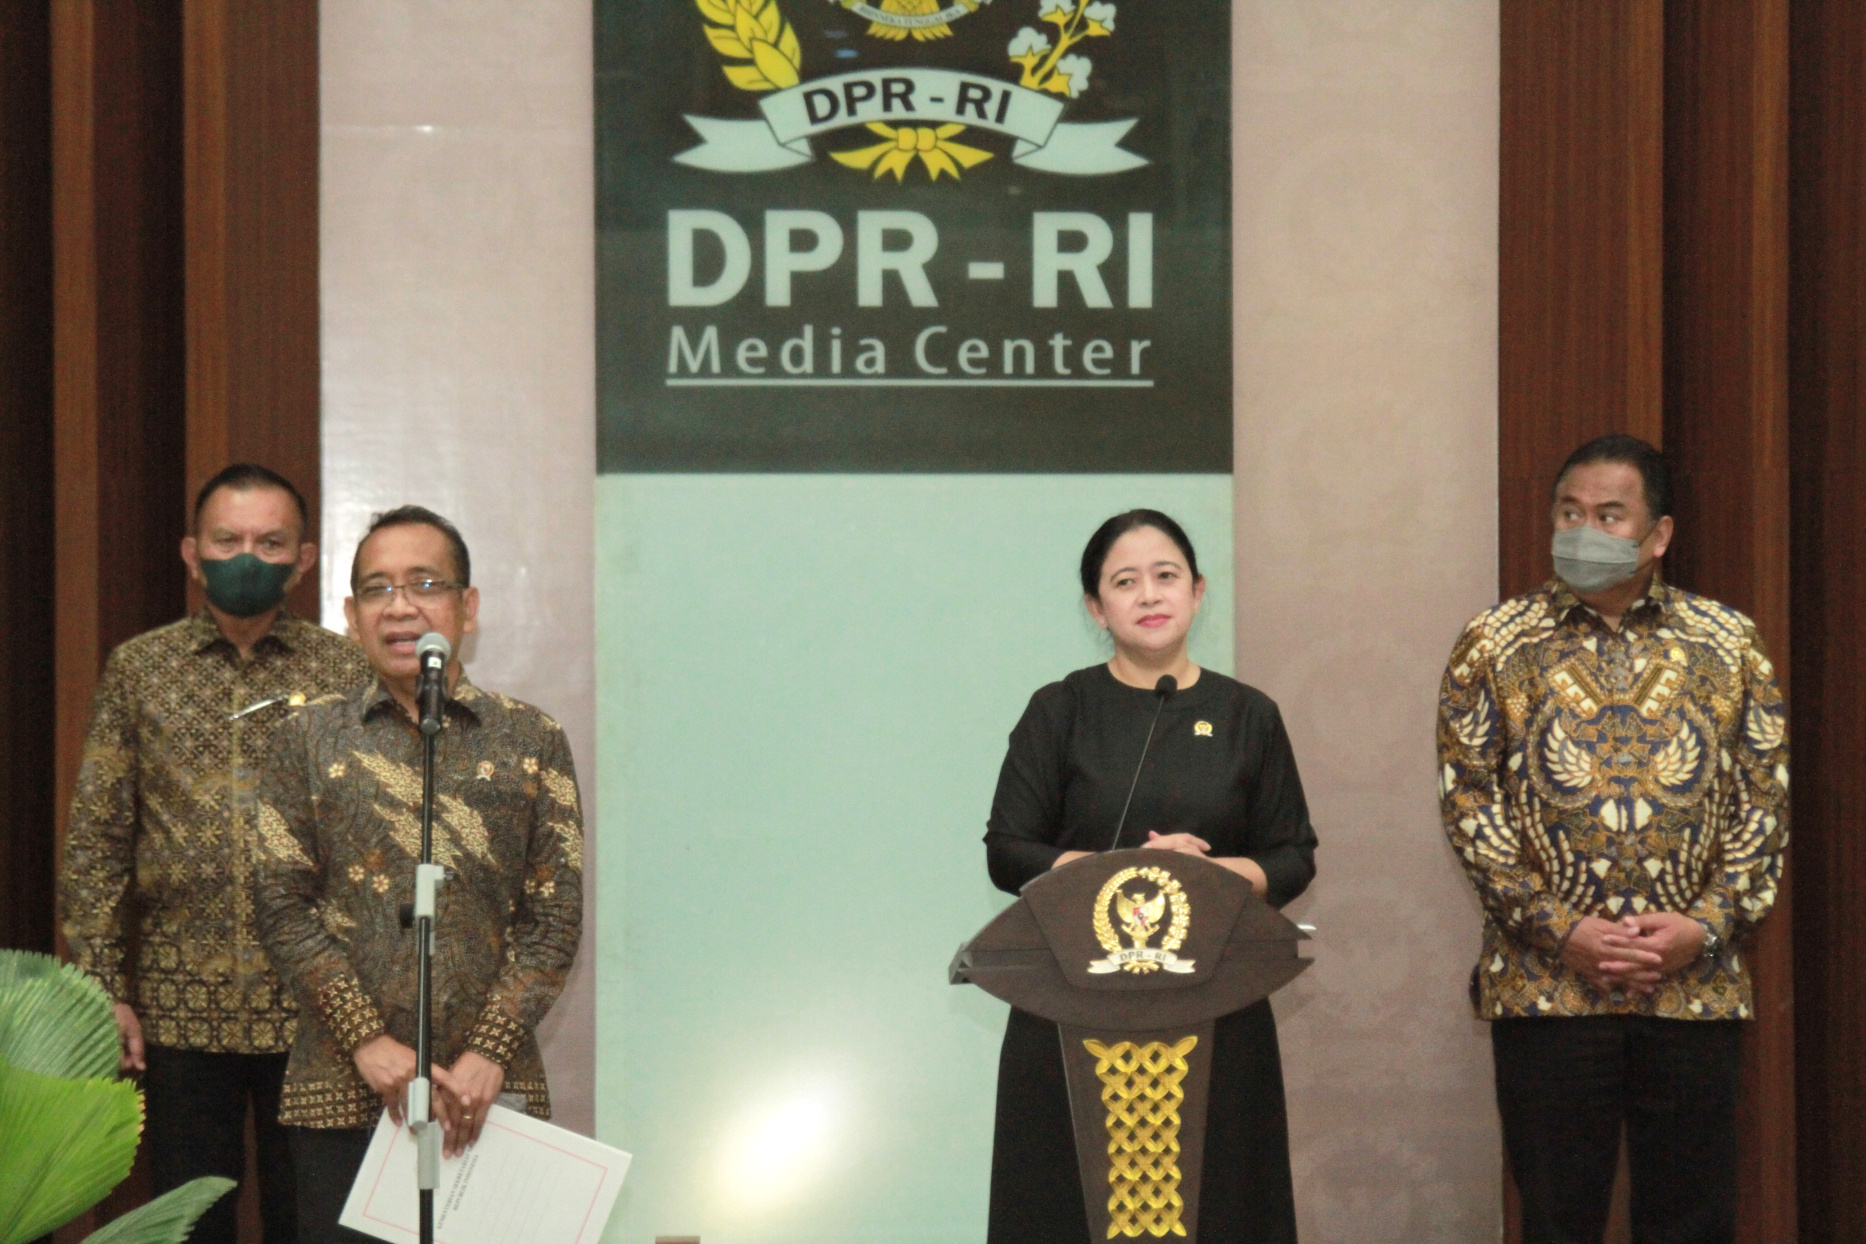 Ketua DPR RI Puan Maharani mengumumkan Calon Panglima TNI pengganti Andika Prakasa yakni Laksmana TNI Yudo Margono, Kepala Staf Angkatan Laut (KASAL) (Ashar/SinPo.id)